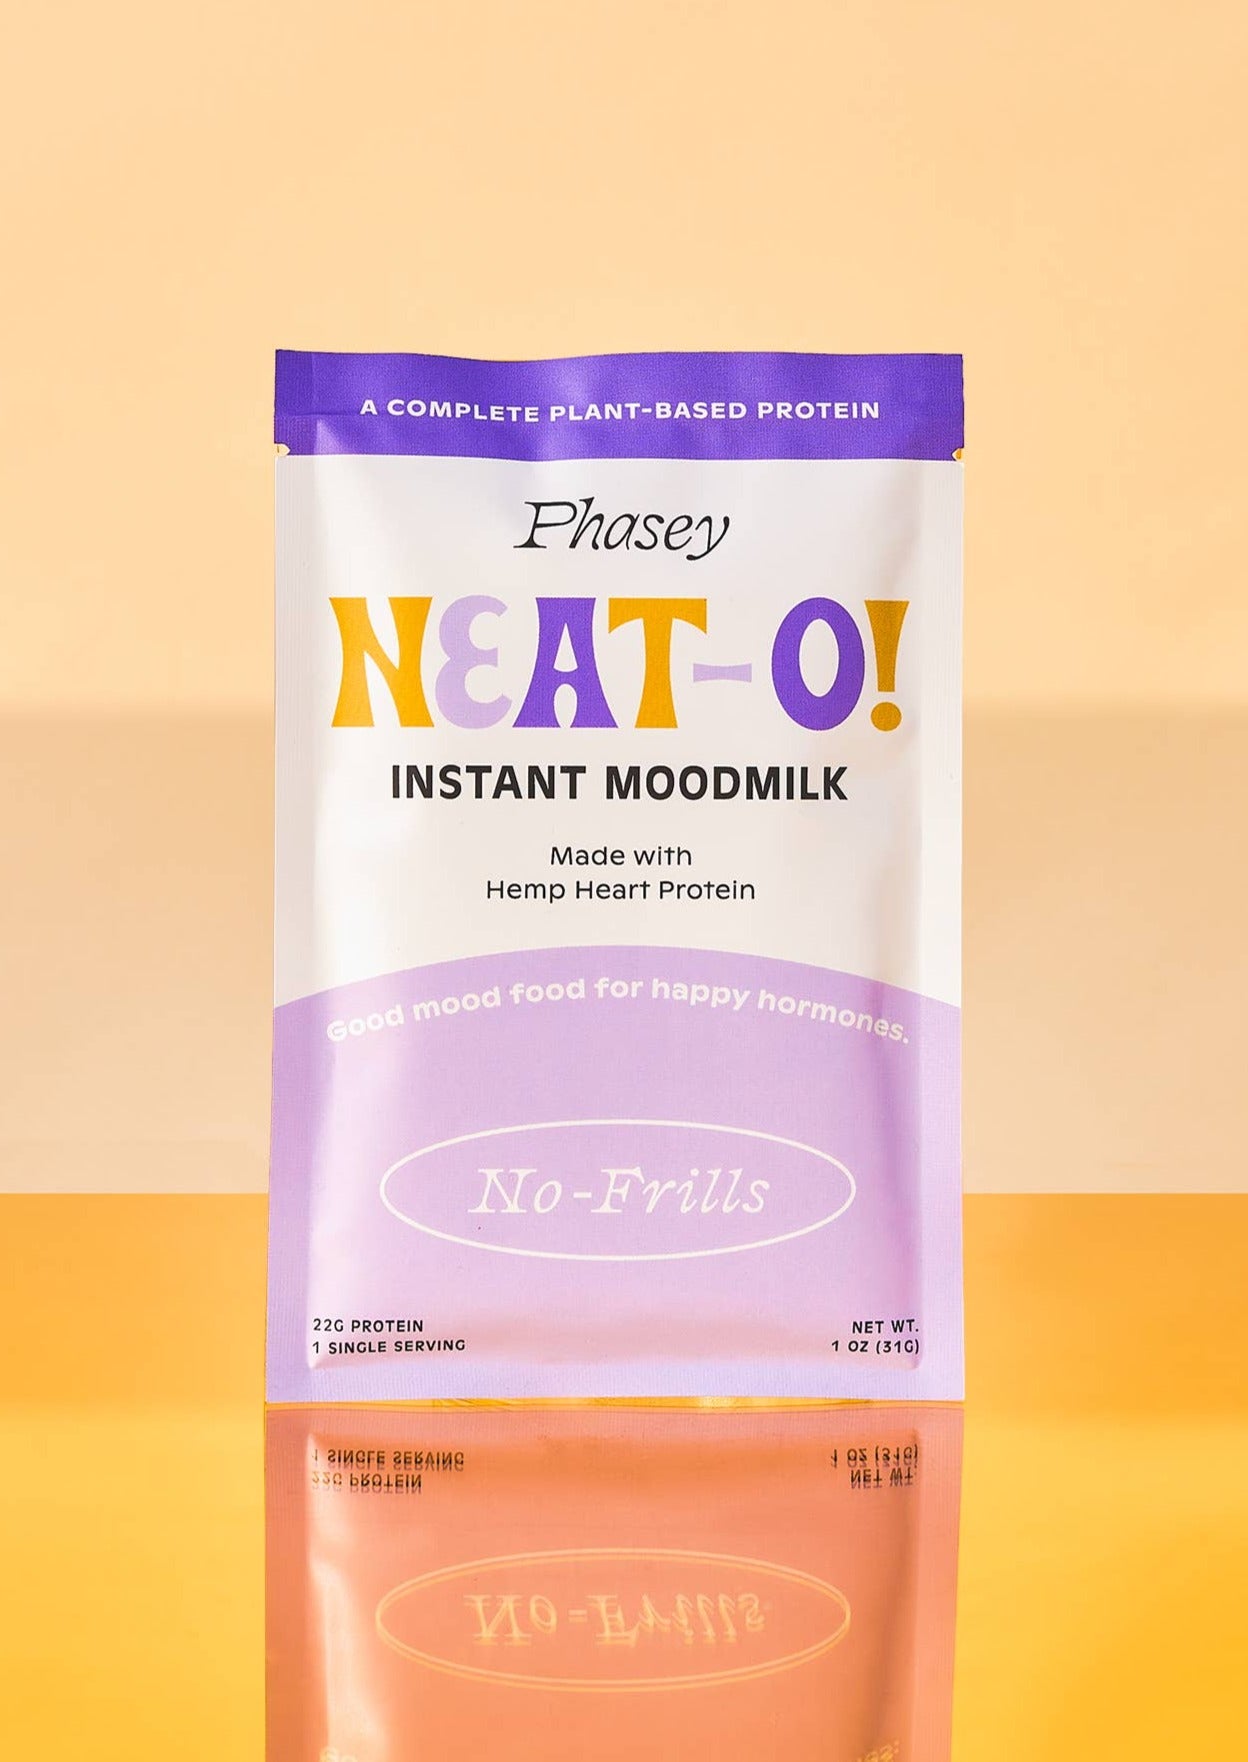 Neat-O! Instant Moodmilk | No-Frills